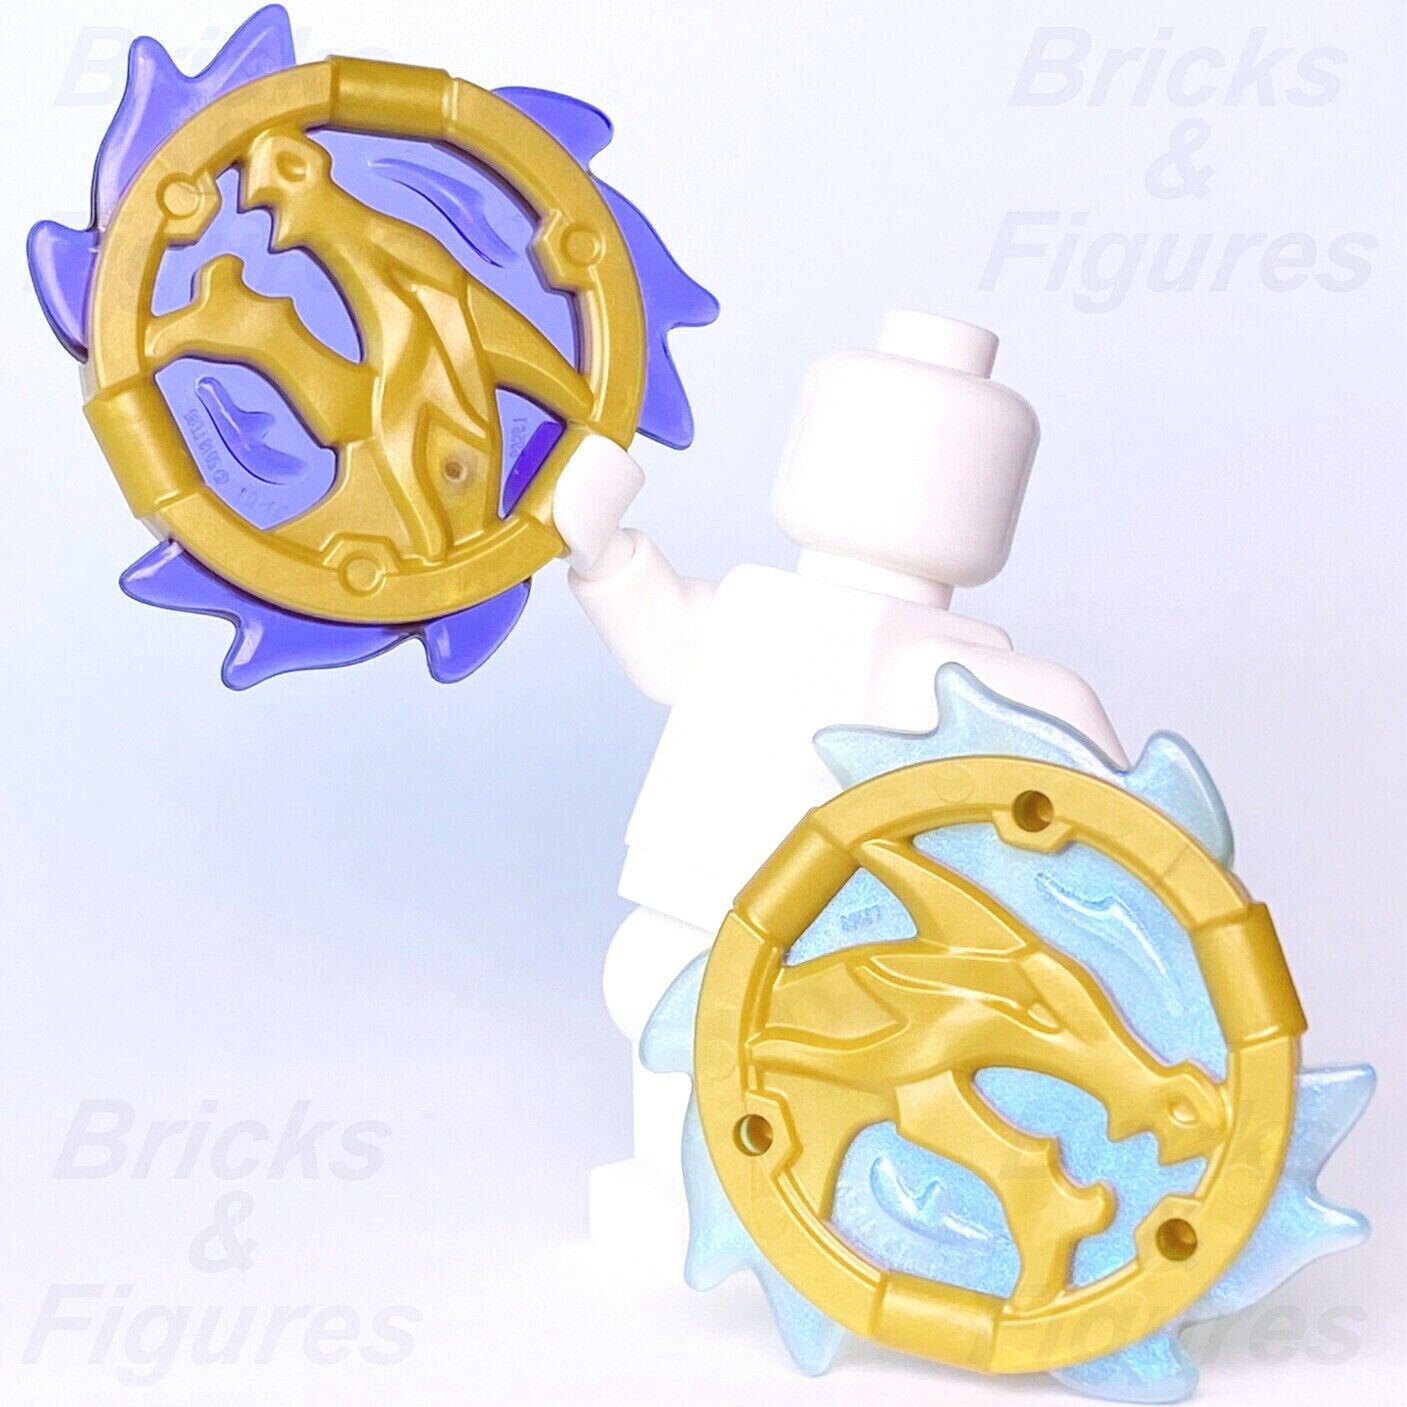 Ninjago LEGO Storm Amulet & Wave Amulet of Wojira Minifigure Weapon Parts New - Bricks & Figures